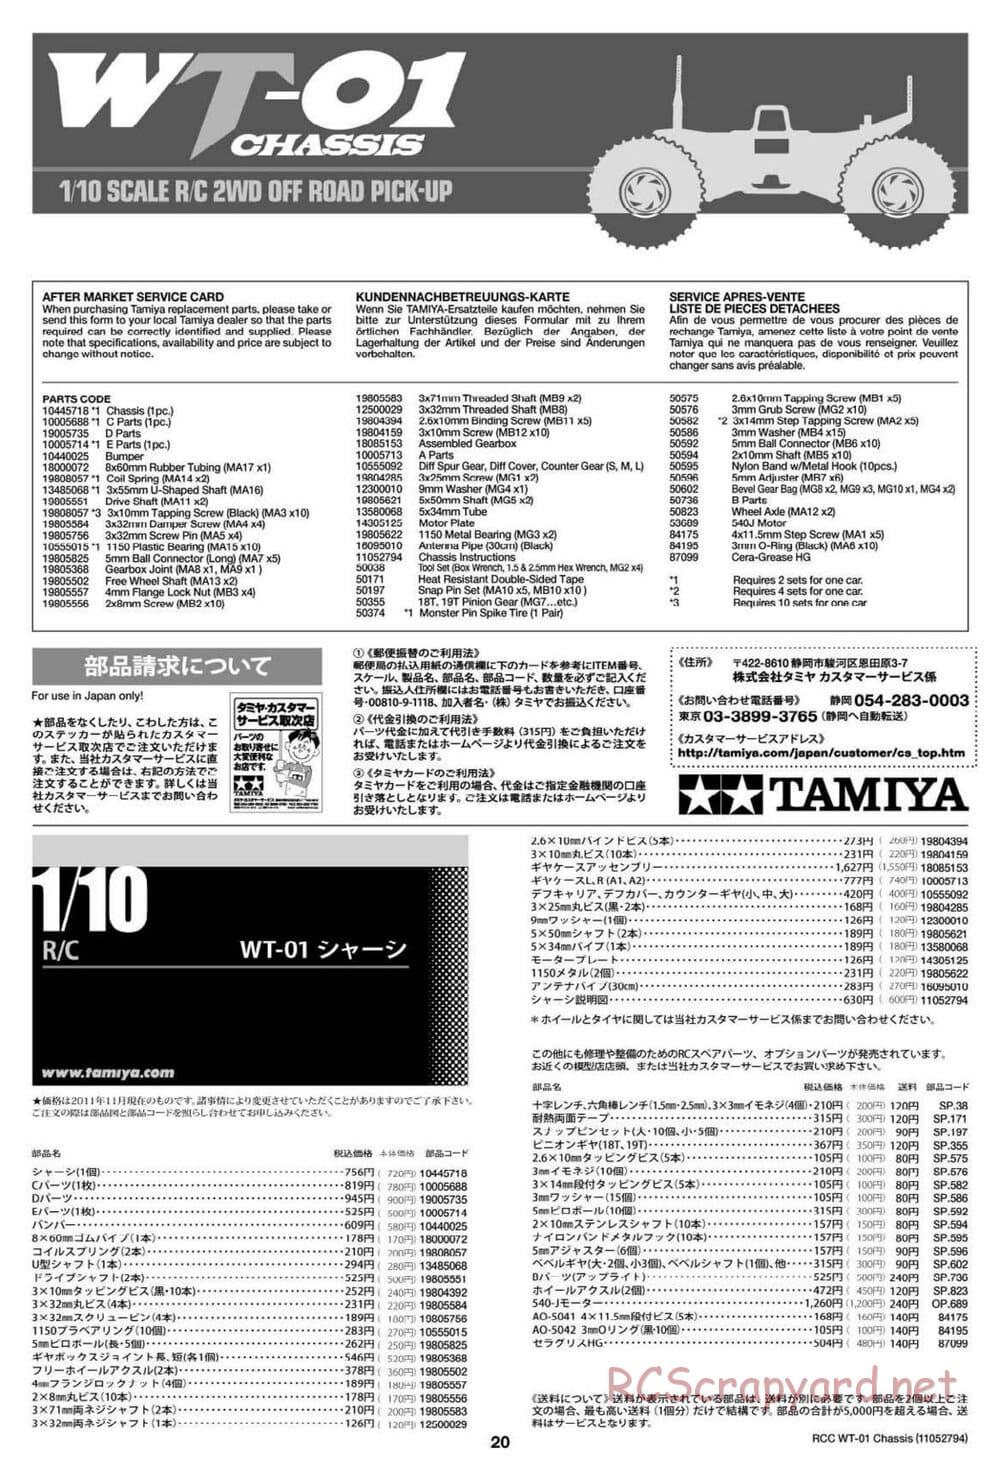 Tamiya - WT-01 Chassis - Manual - Page 20